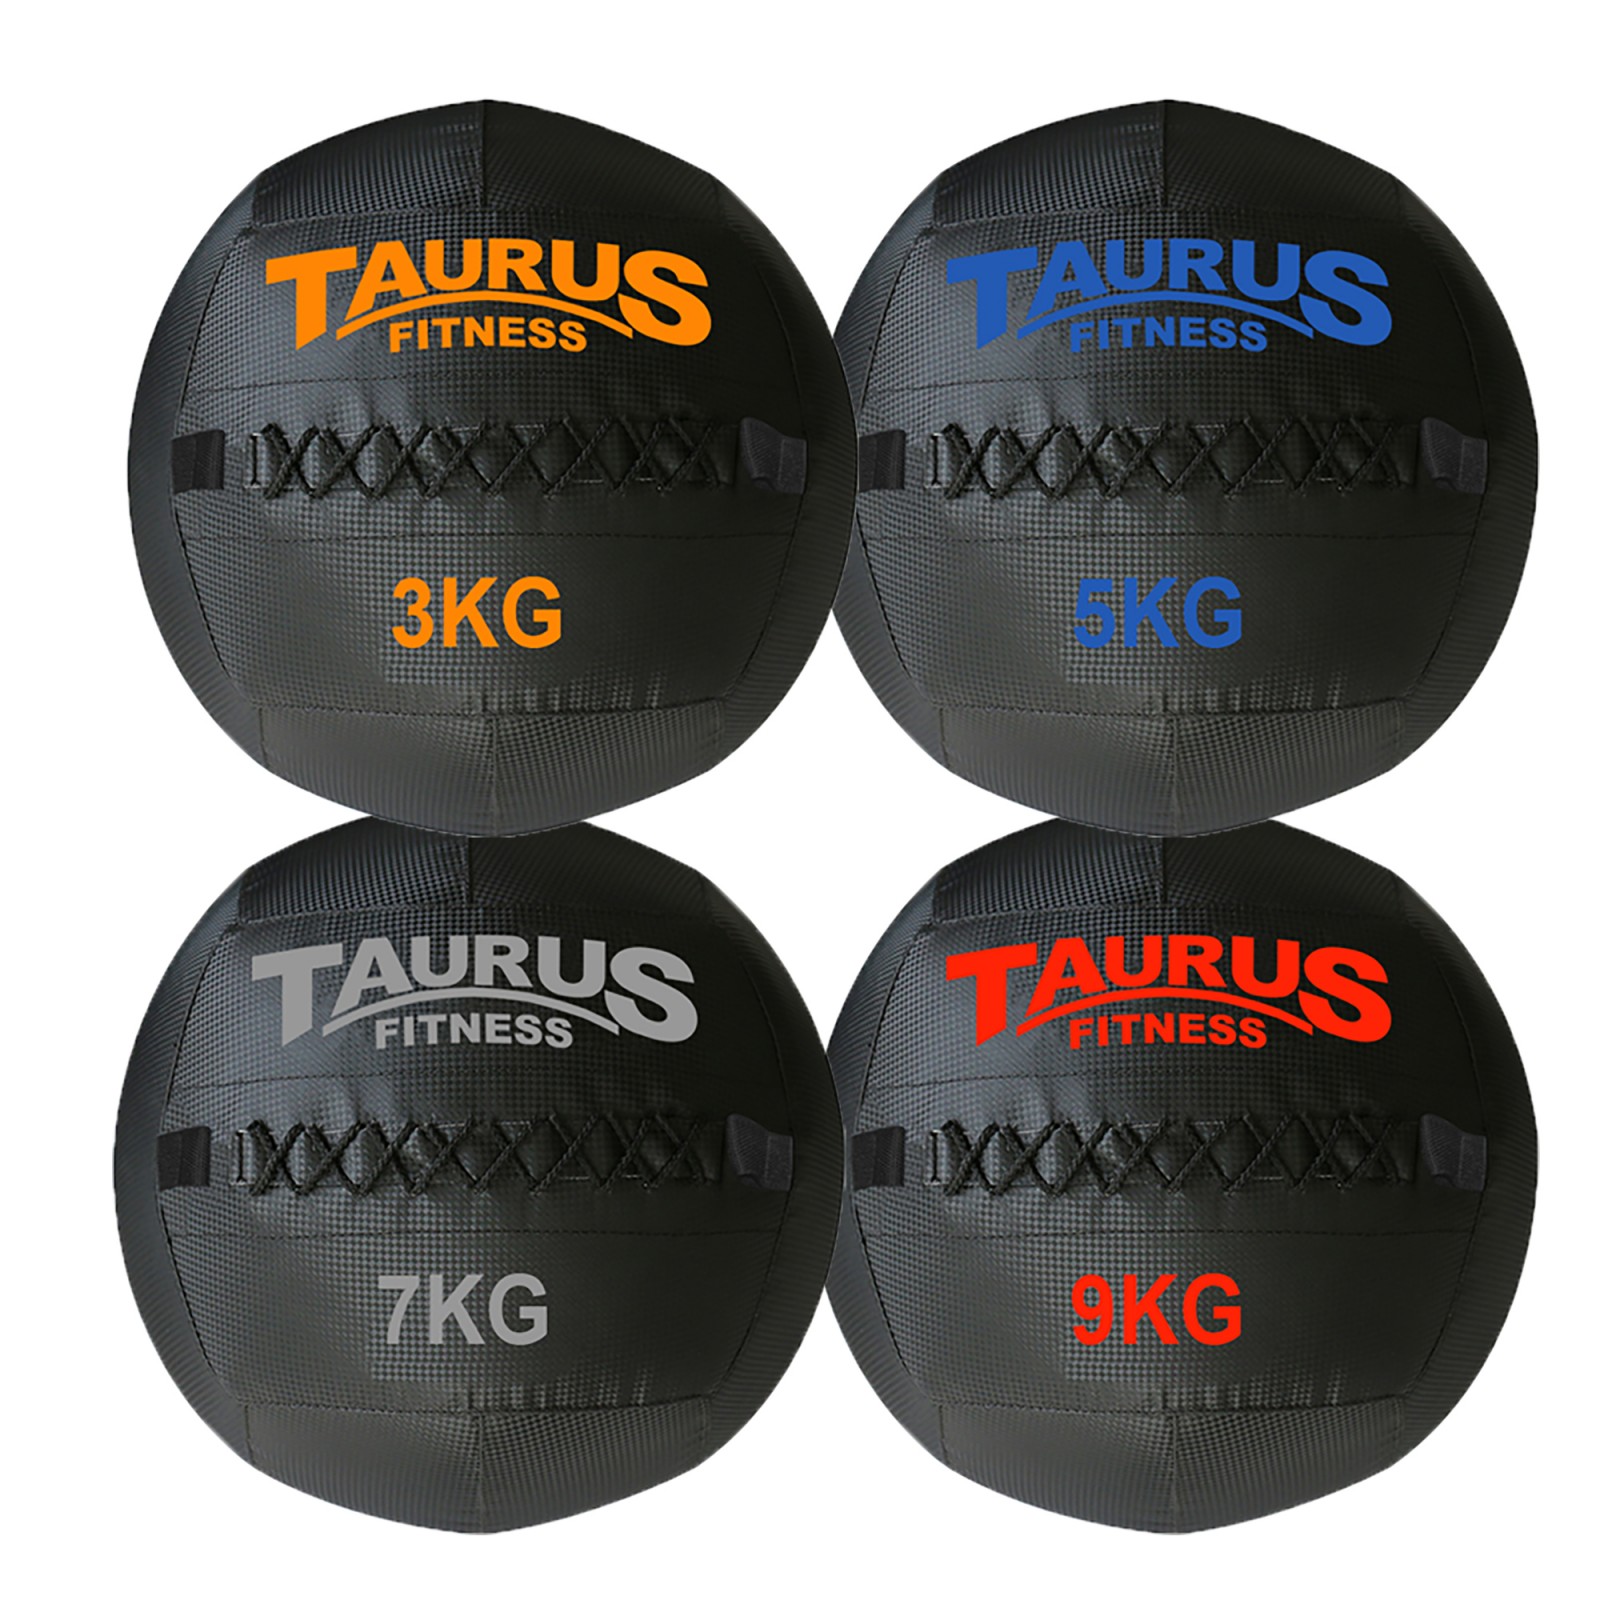 Set de Accesorios Taurus para Cinta de Correr y Yoga - Taurus Fitness